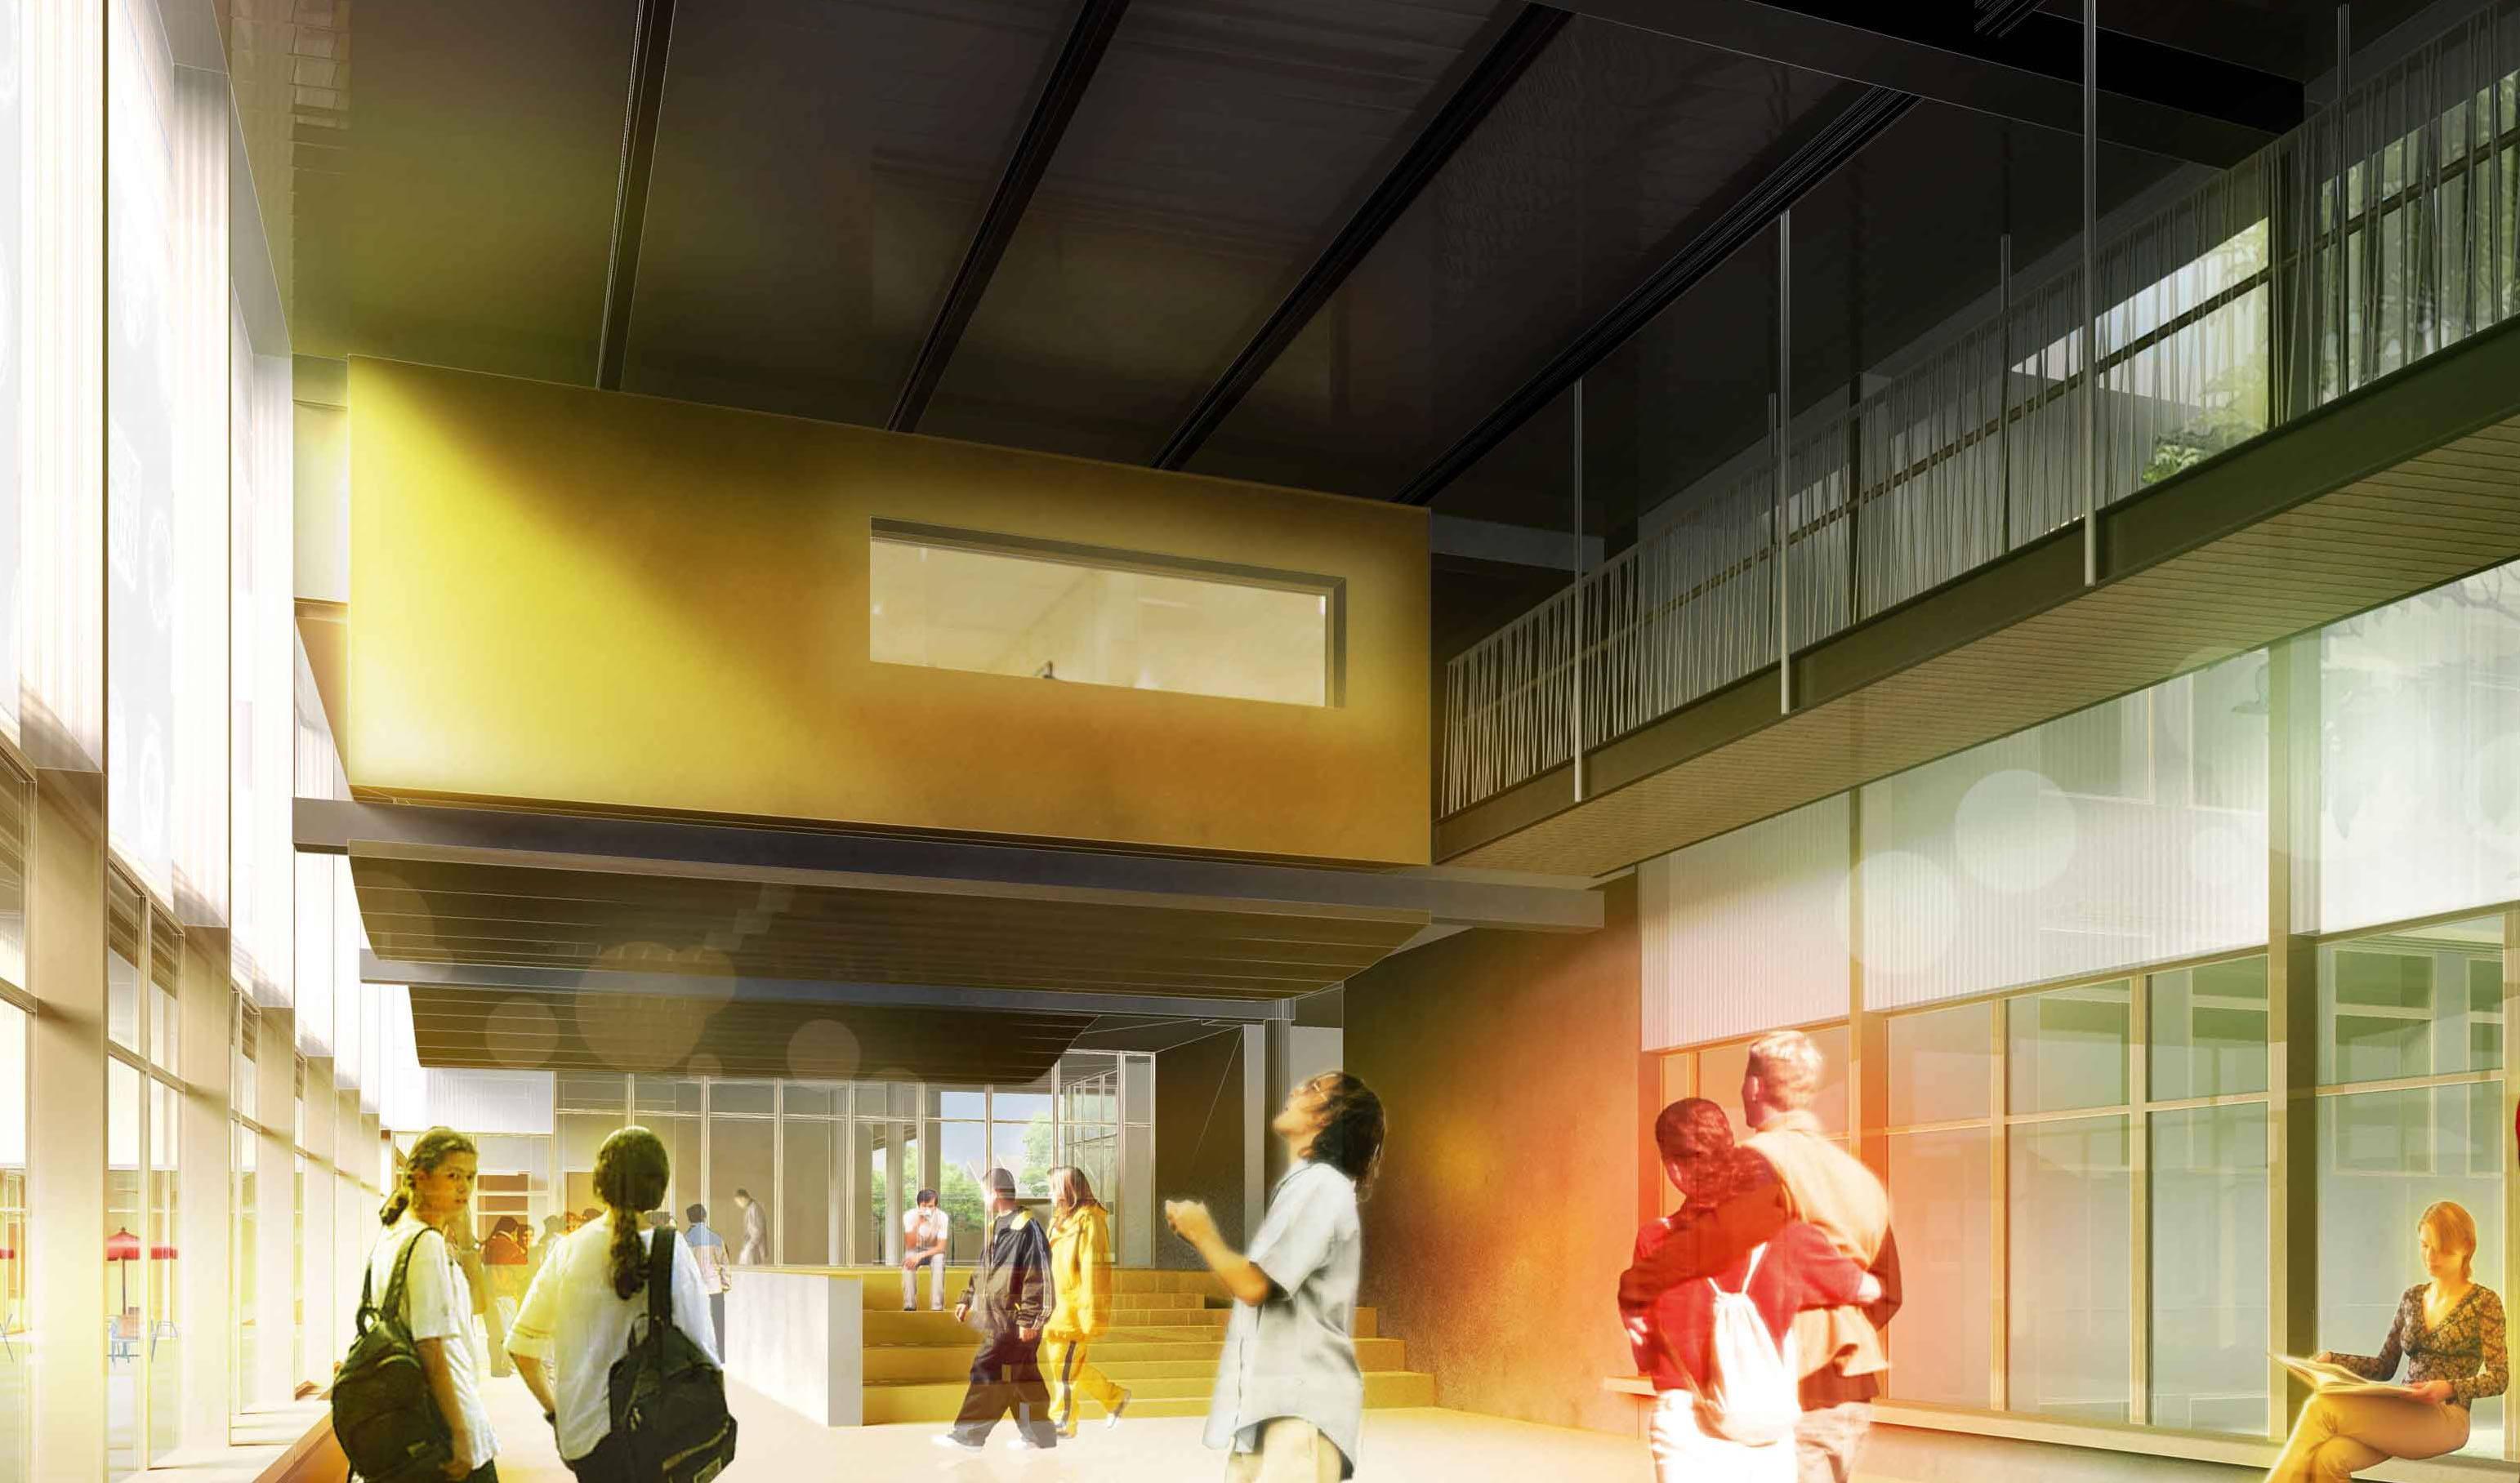 lycée ashton chaumont concours architecture projet perspective